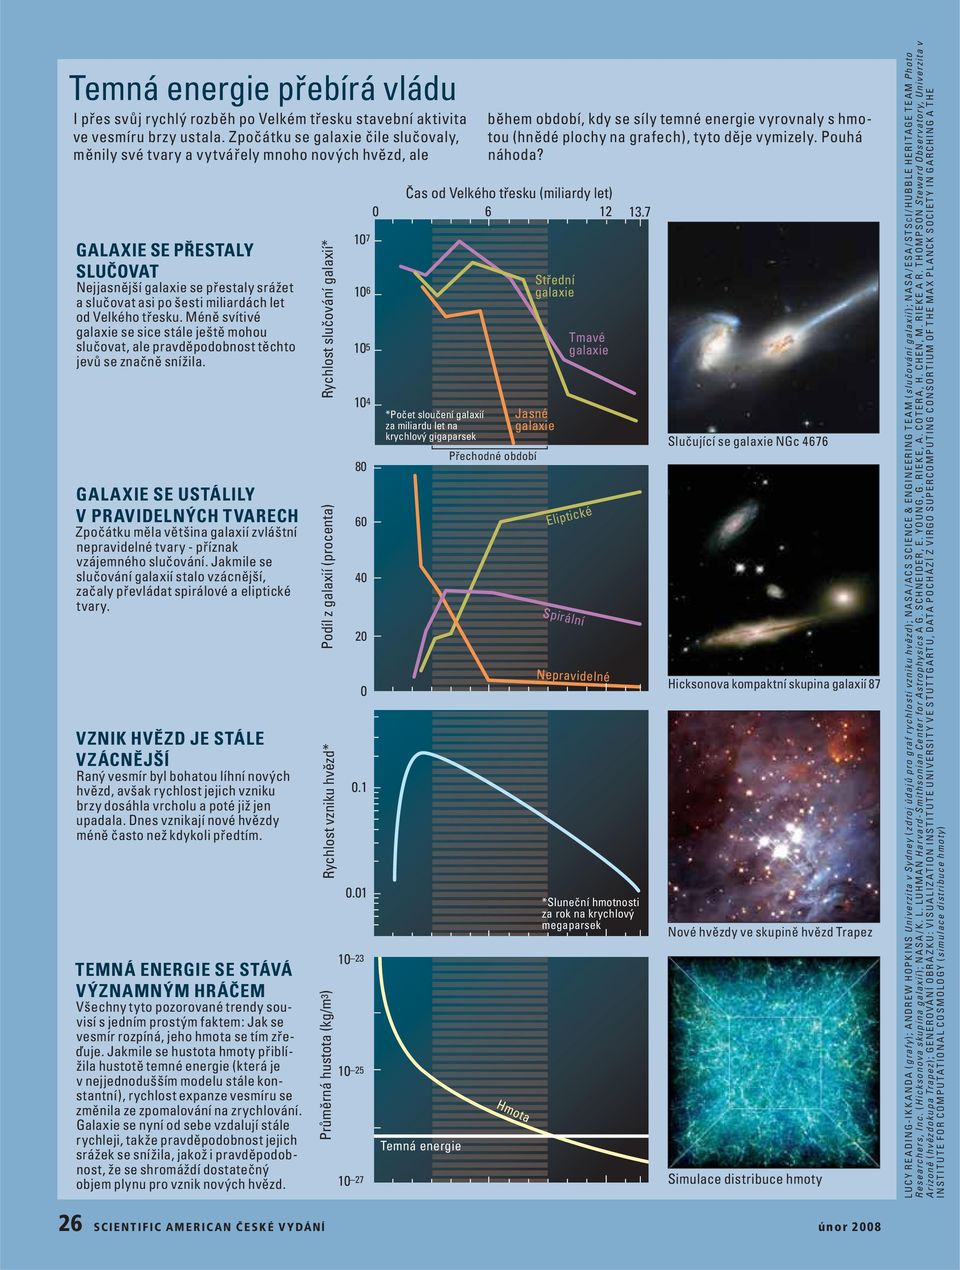 Velkého třesku. Méně svítivé galaxie se sice stále ještě mohou slučovat, ale pravděpodobnost těchto jevů se značně snížila.